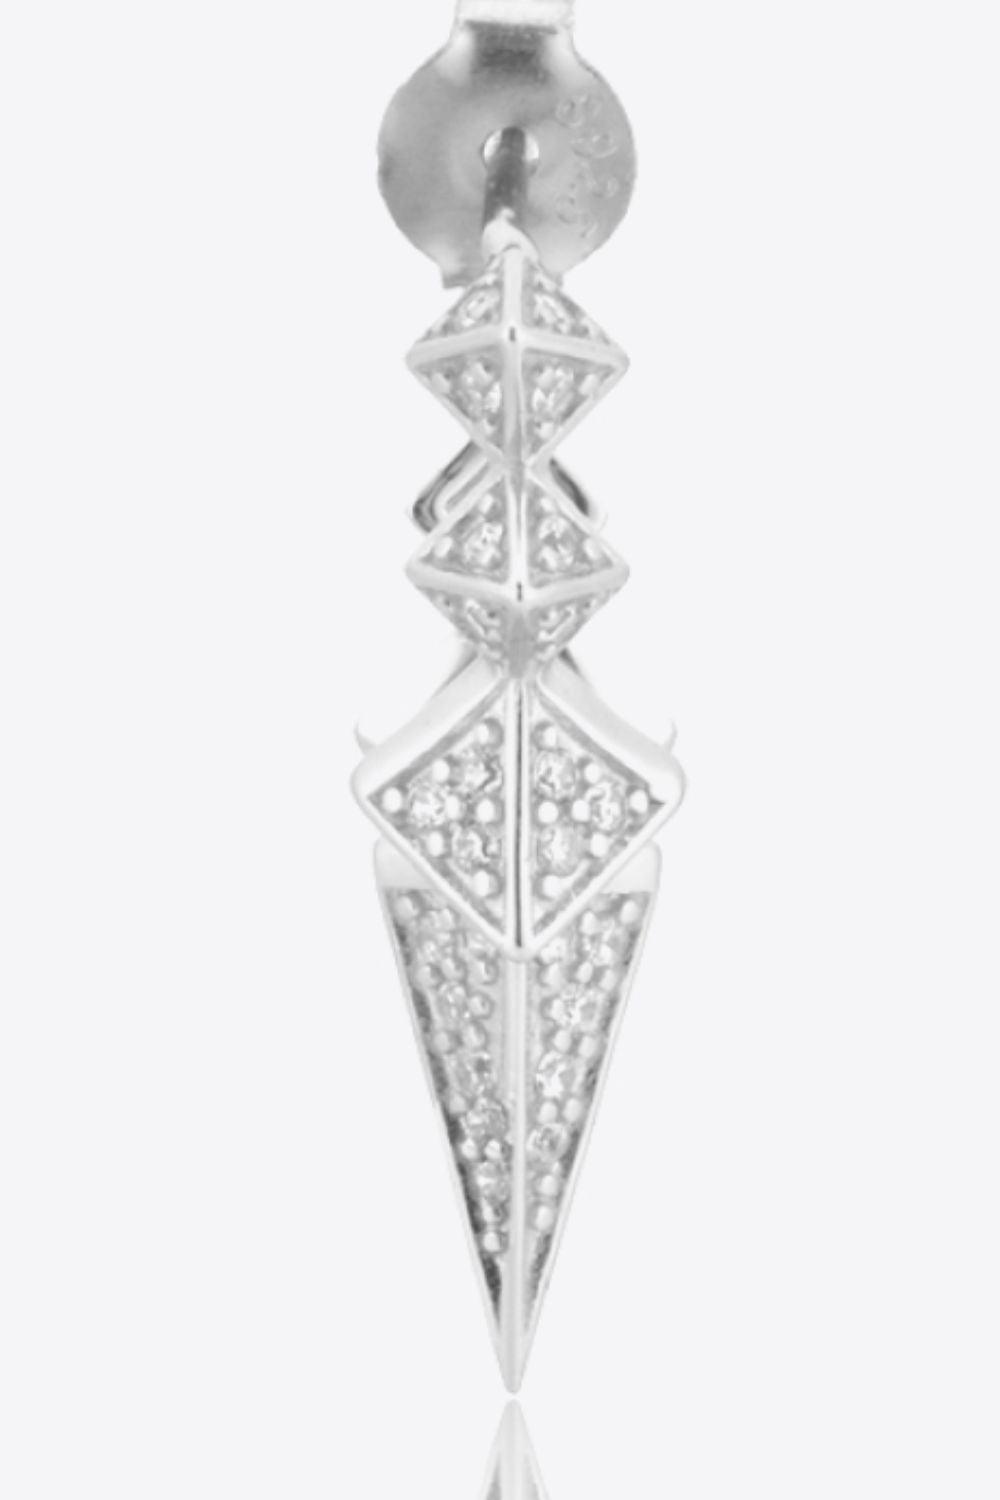 Awesome Sterling Silver Zircon Geometric Earrings - MXSTUDIO.COM